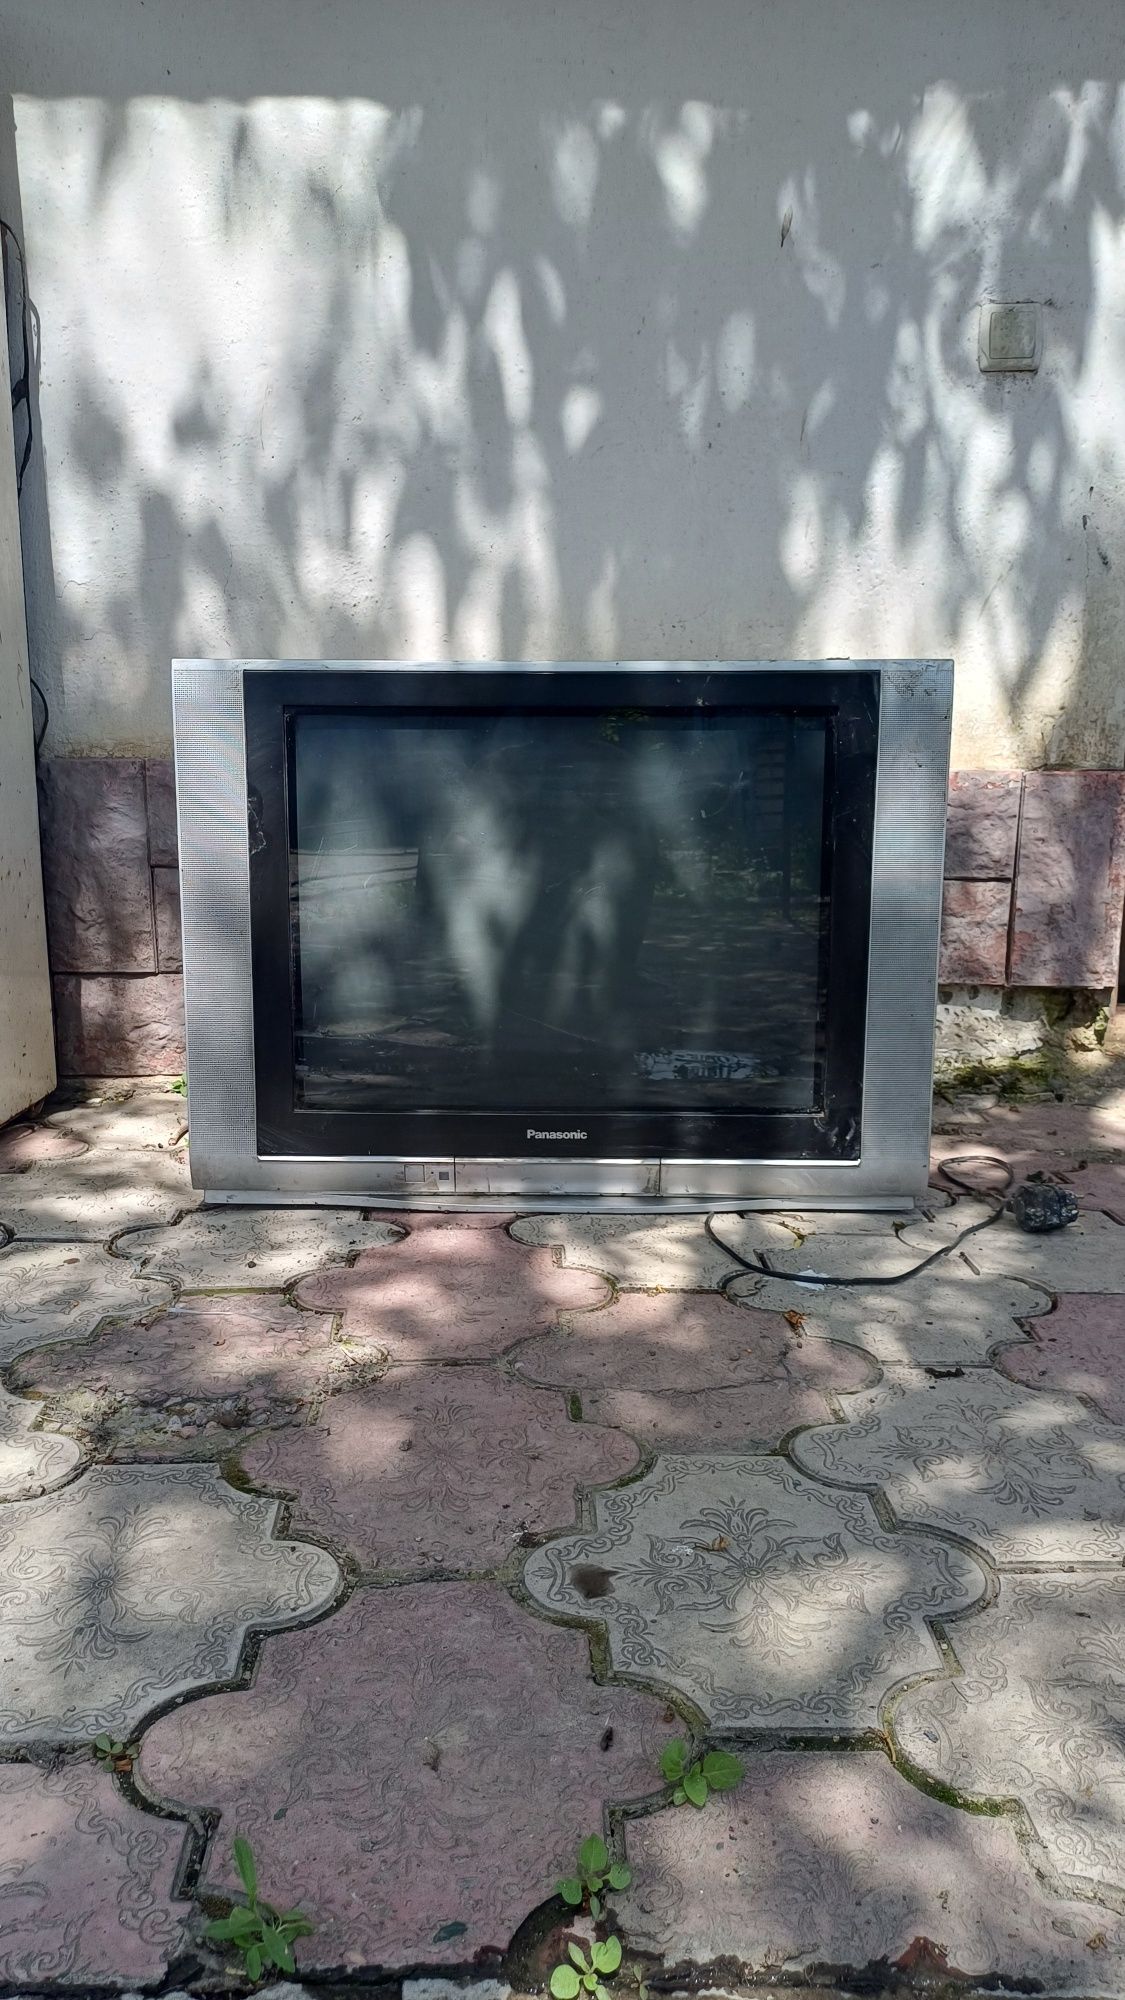 Продаётся советский телевизор